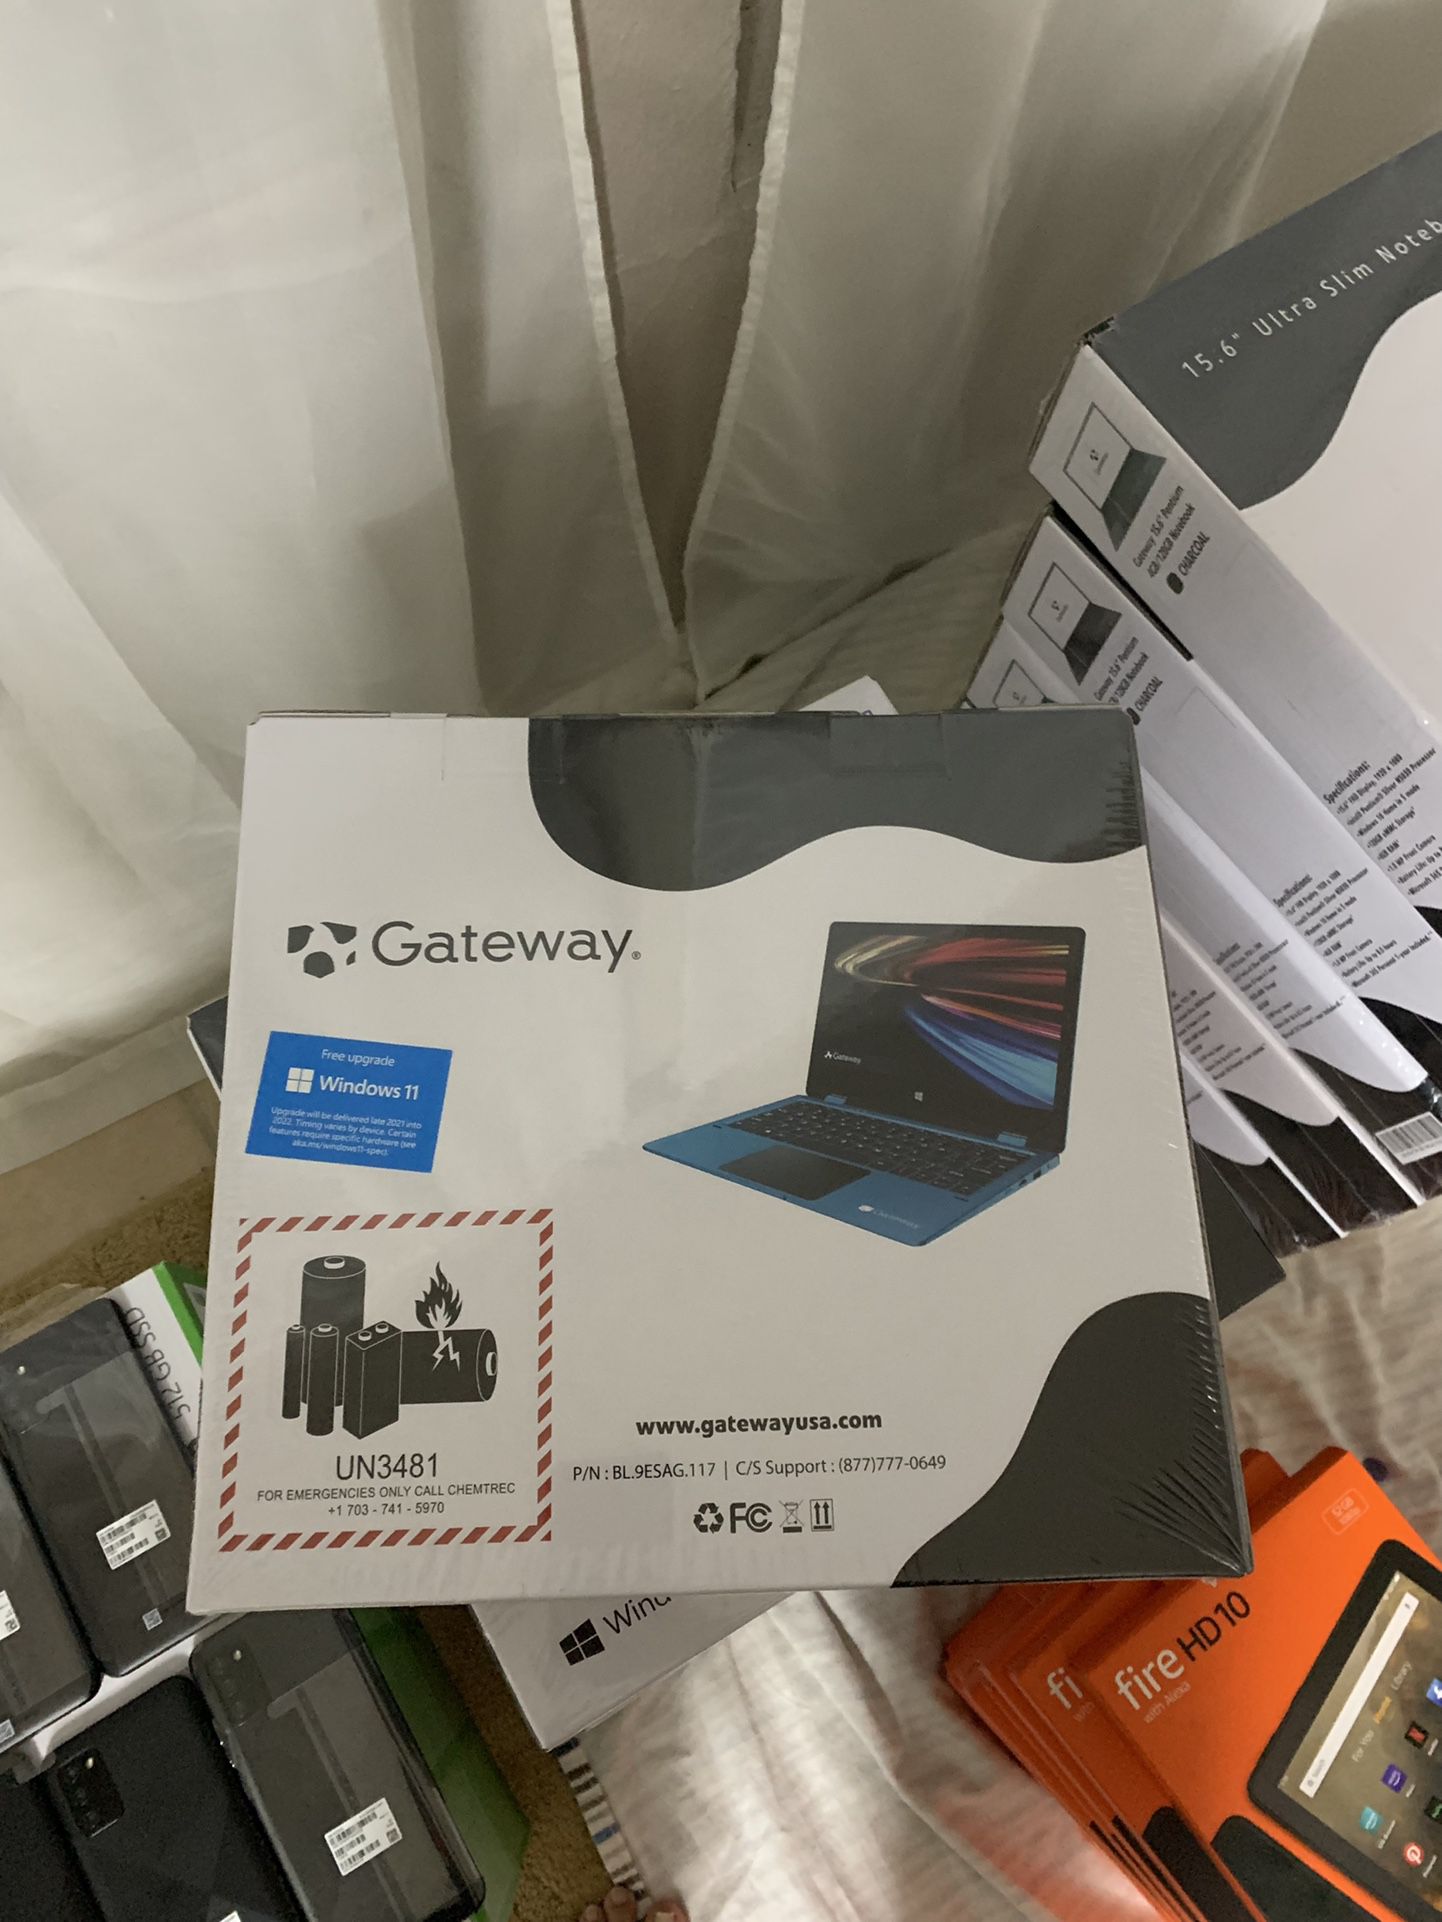 Gateway notebook 11.6 2 in 1 laptop